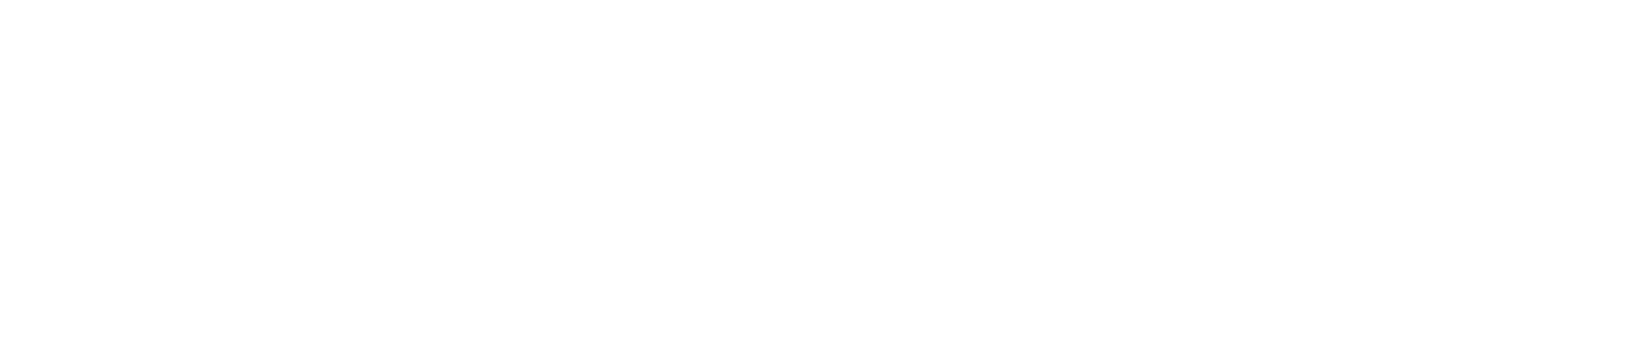 Lennox logo large for dark backgrounds (transparent PNG)